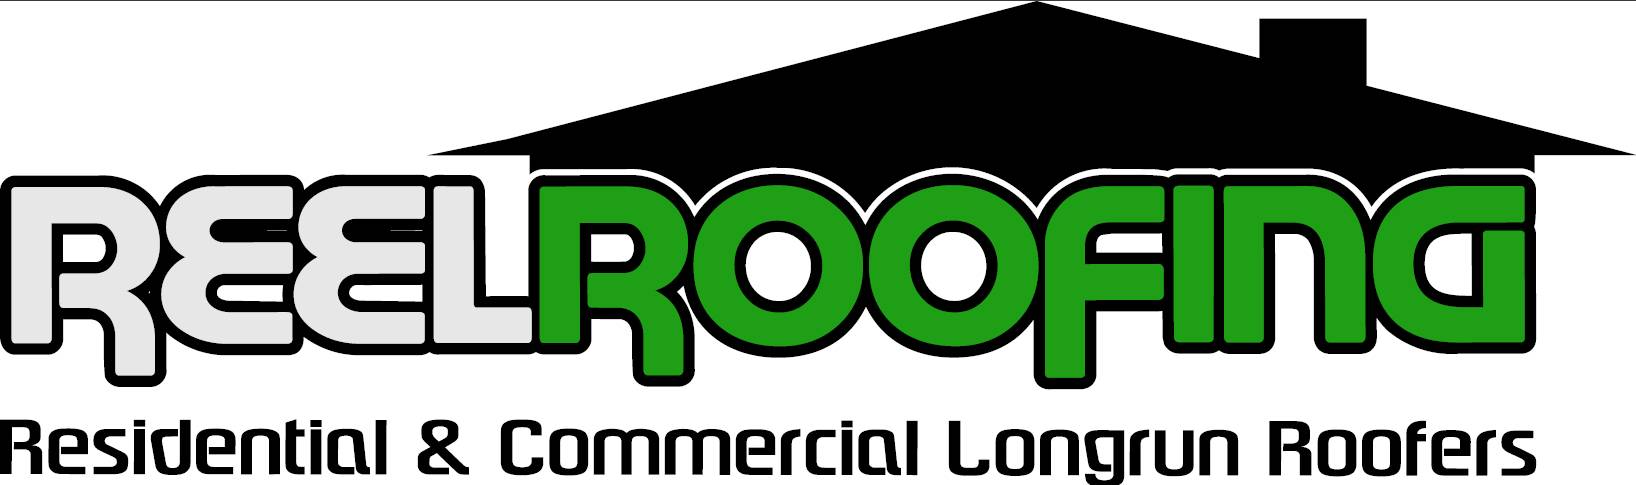 Reel Roofing v2 002